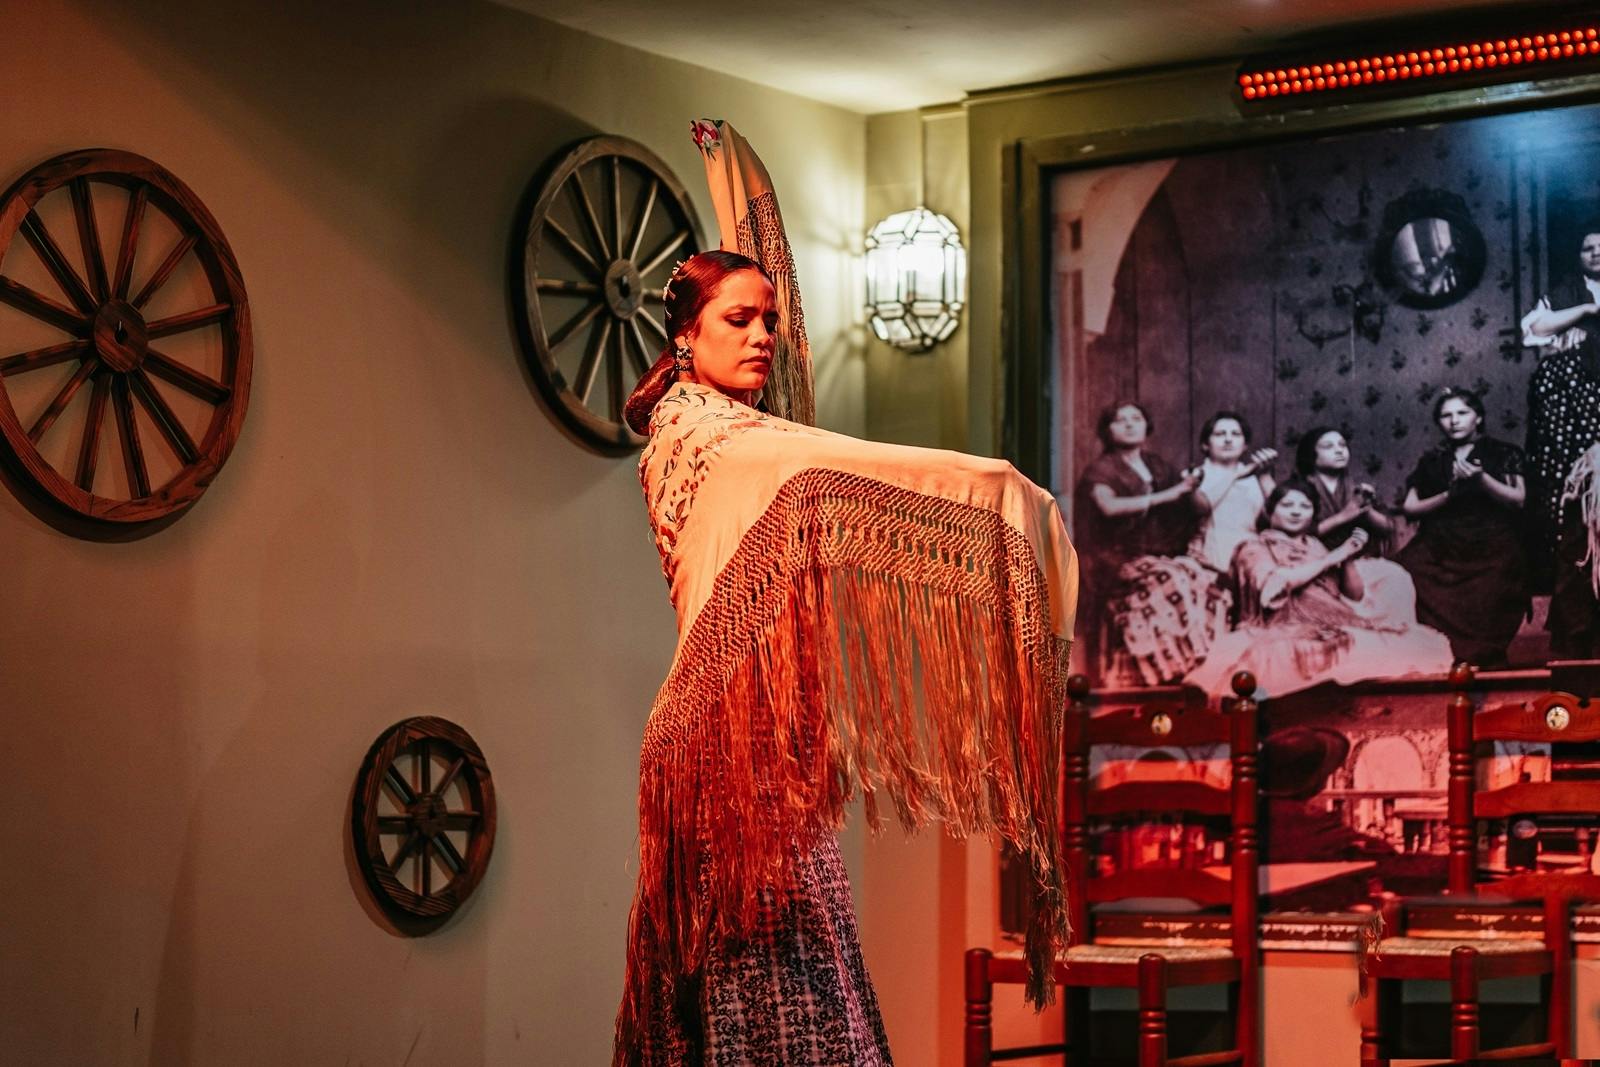 Pokaz flamenco Tablao La Cantaora z opcjonalną kolacją